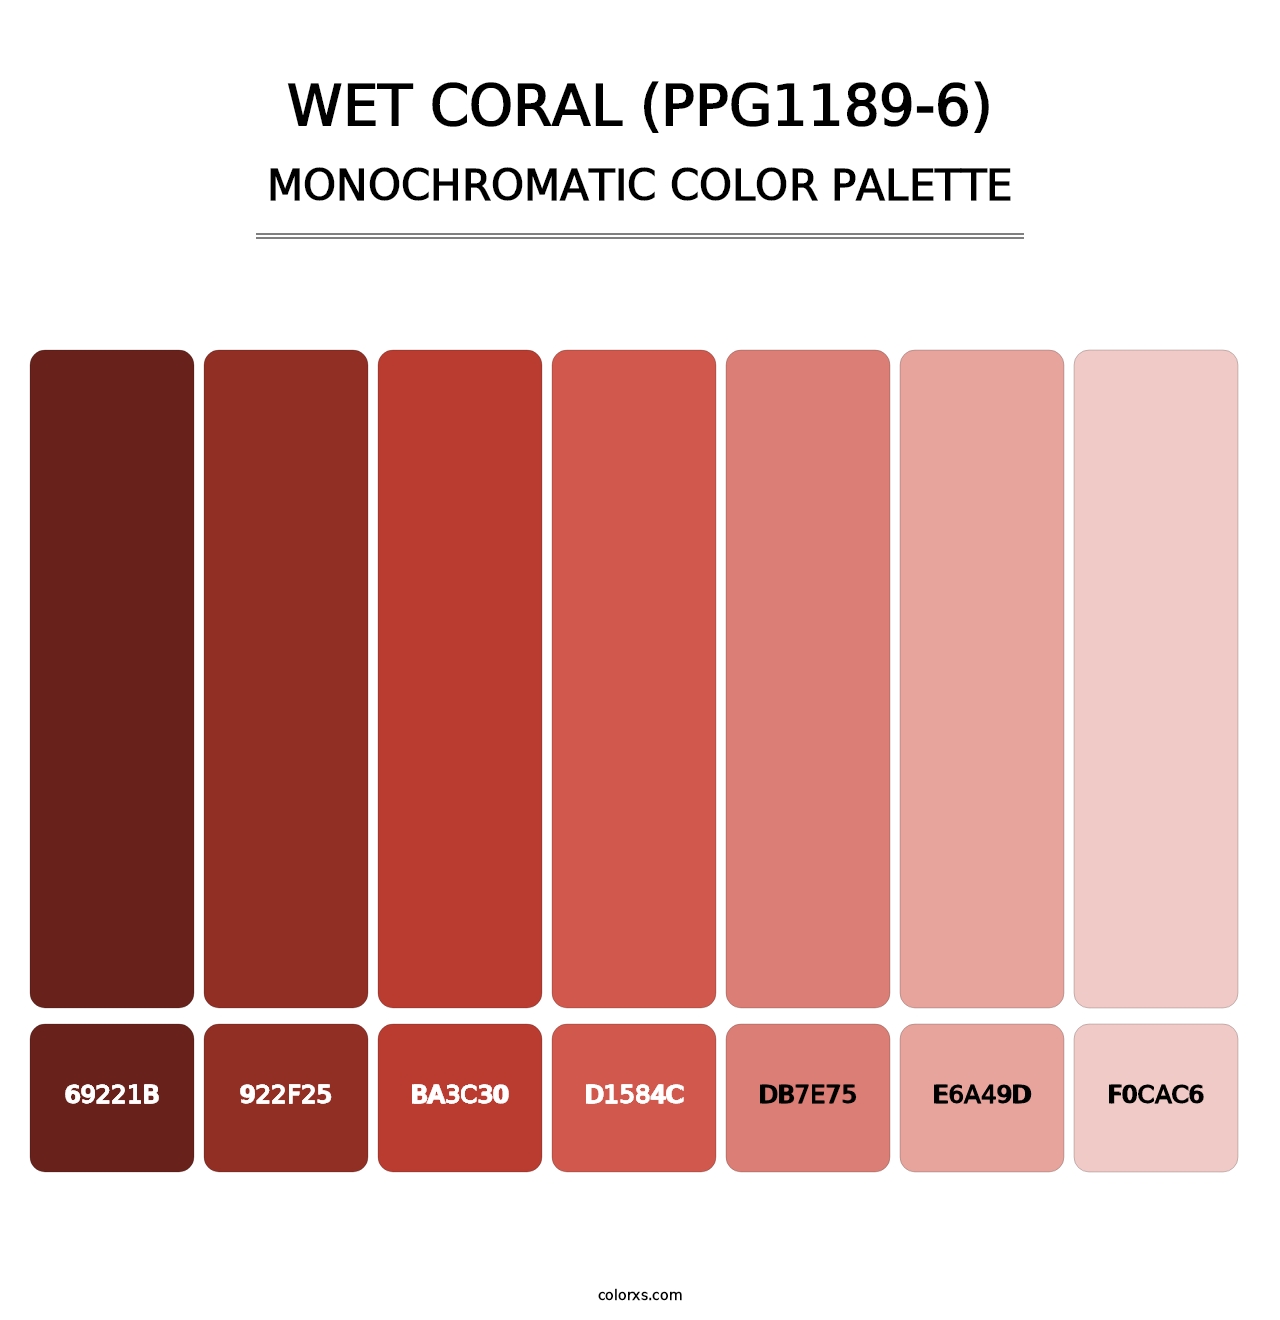 Wet Coral (PPG1189-6) - Monochromatic Color Palette